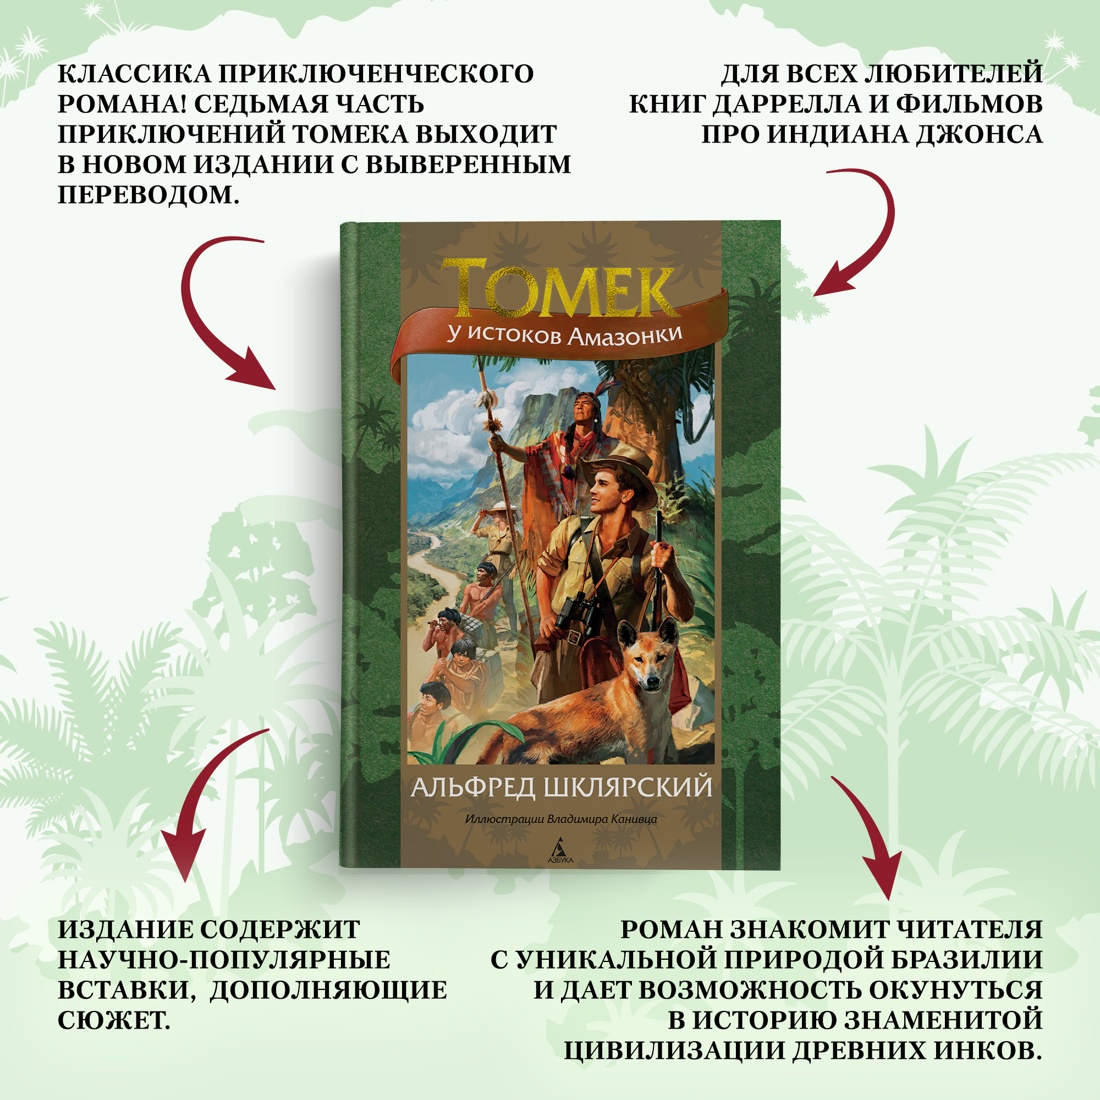 Промо материал к книге "Томек у истоков Амазонки" №1